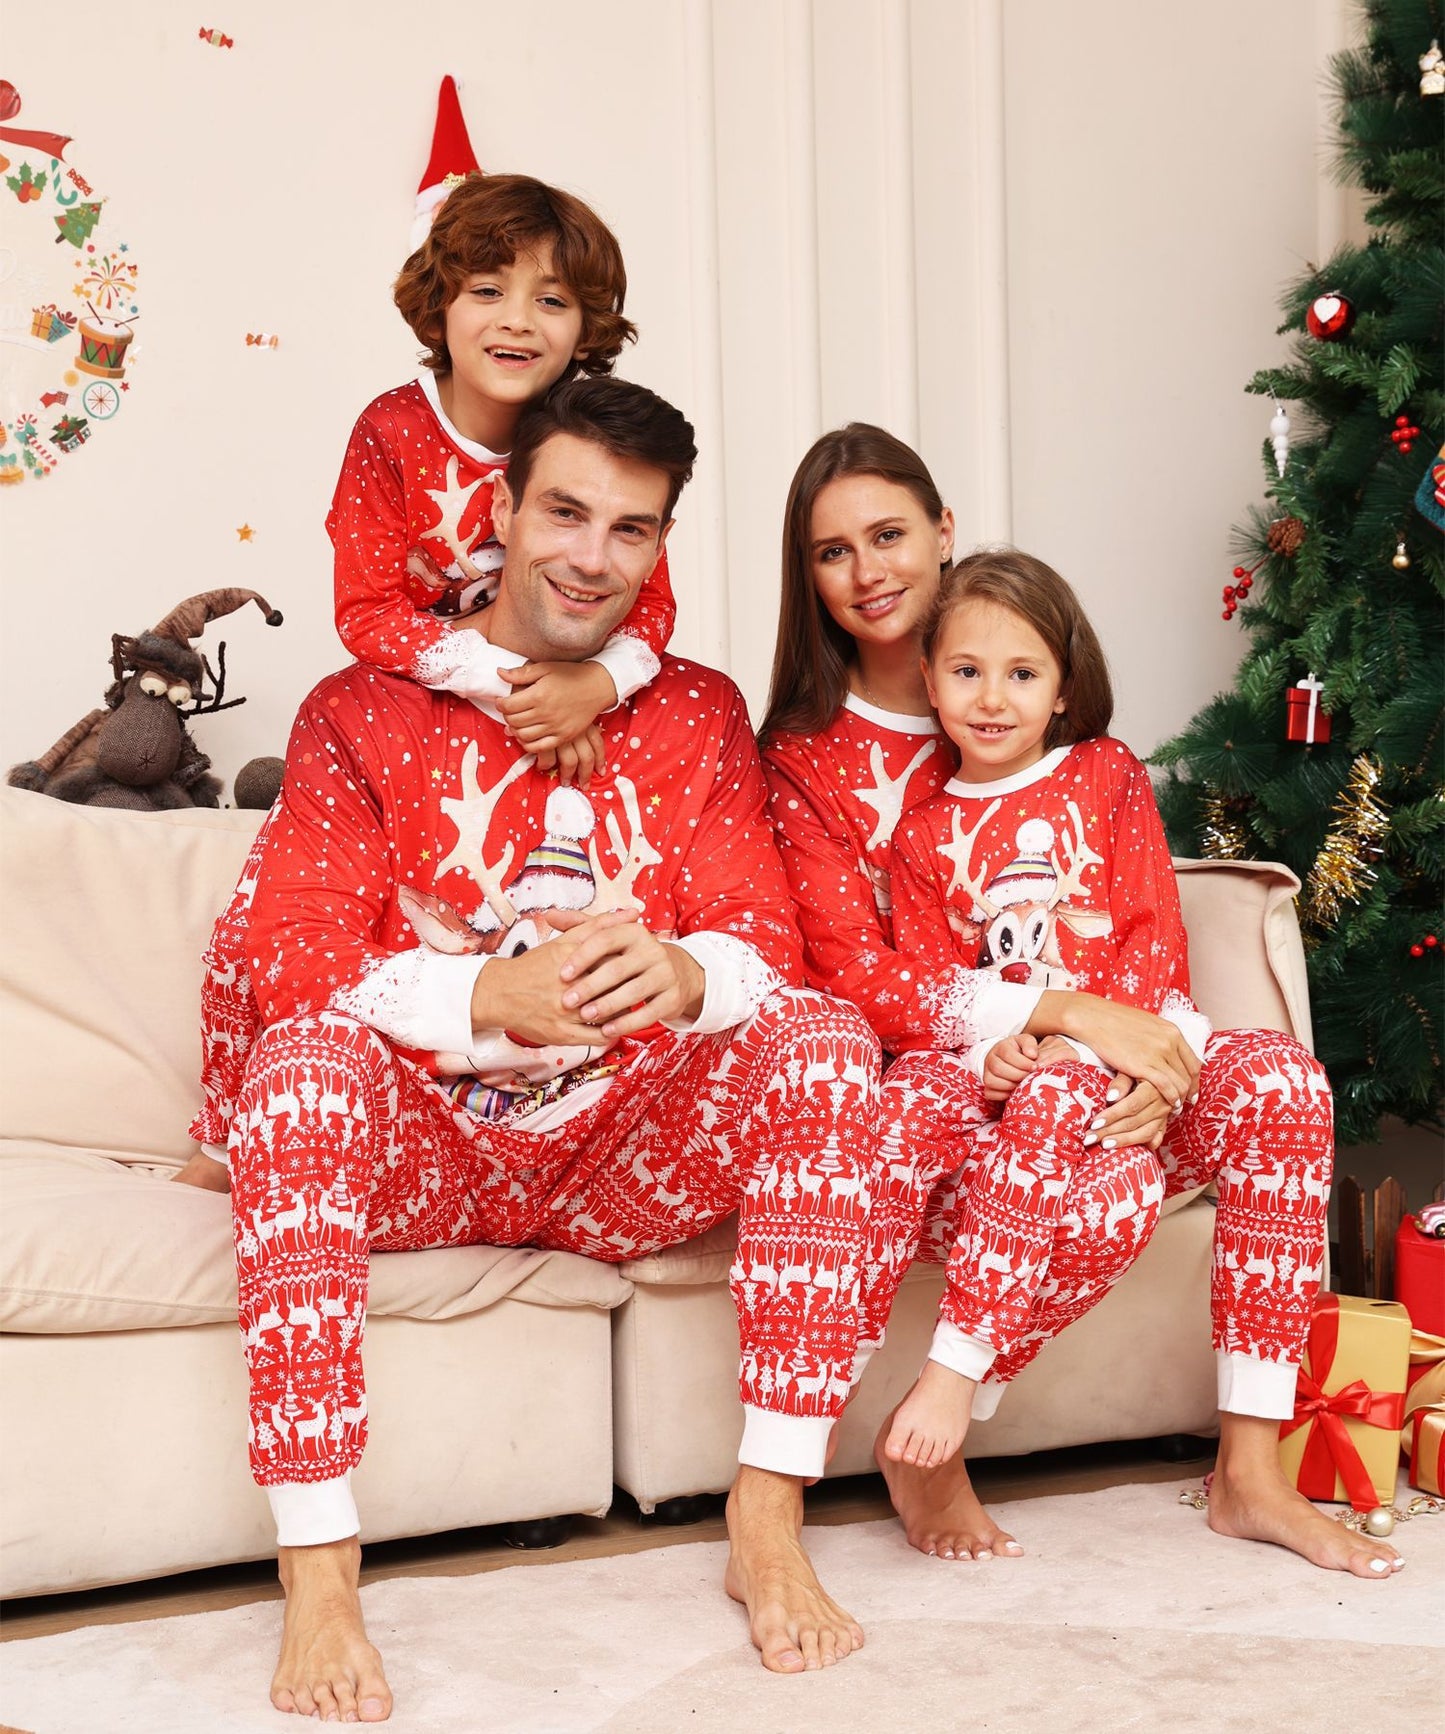 BamBam Cartoon Snowflake Deer Printed Christmas Parent-Child Pajamas Home Clothes - BamBam